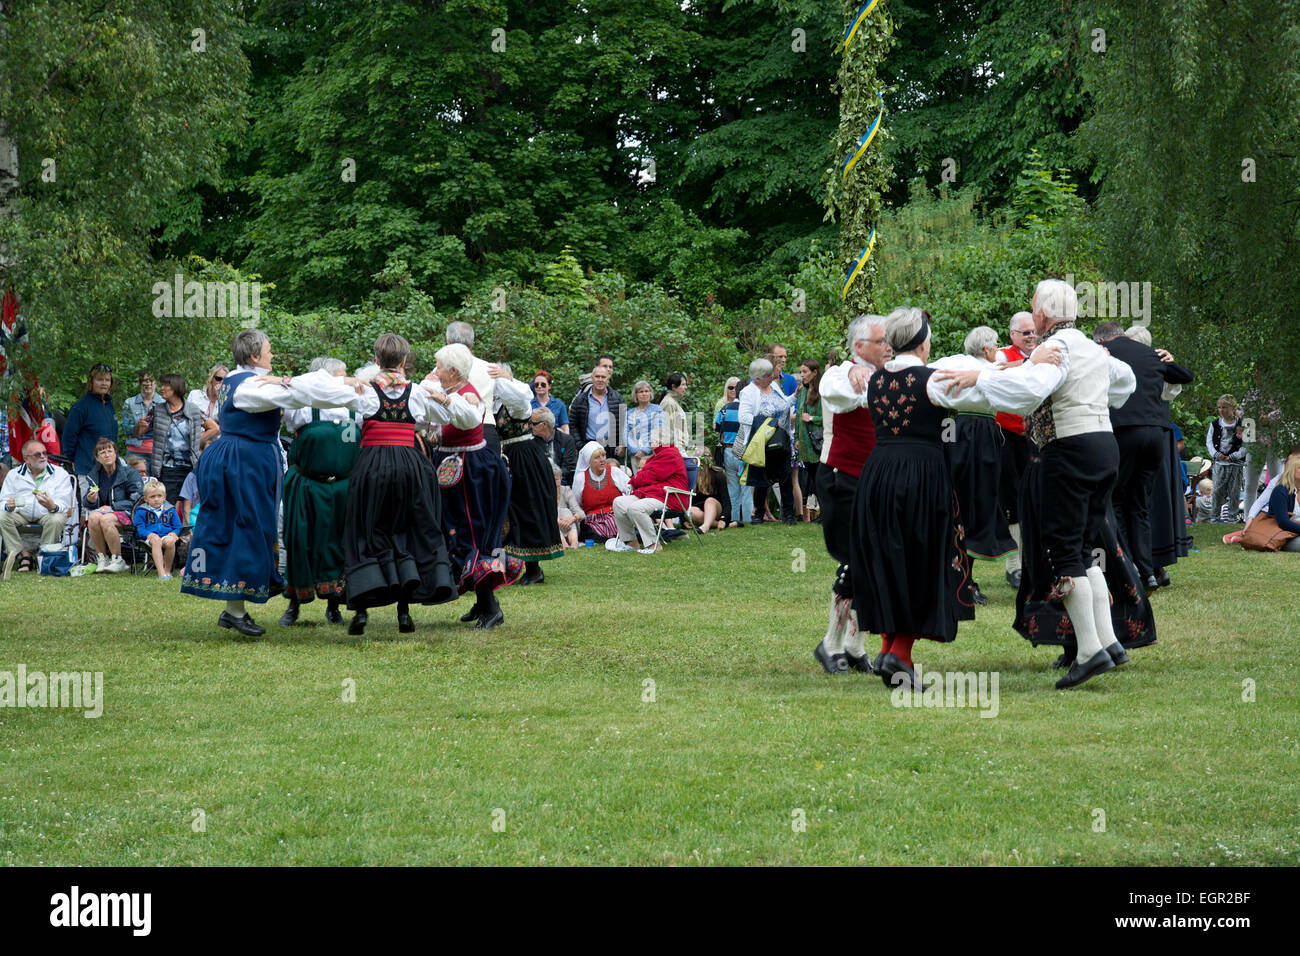 ALSTER, KARLSTAD, Schweden - 20. Juni 2014: Menschen am Mittsommerfest und Norwegisch - schwedische Hochzeit am 20. Juni 2014 Stockfoto